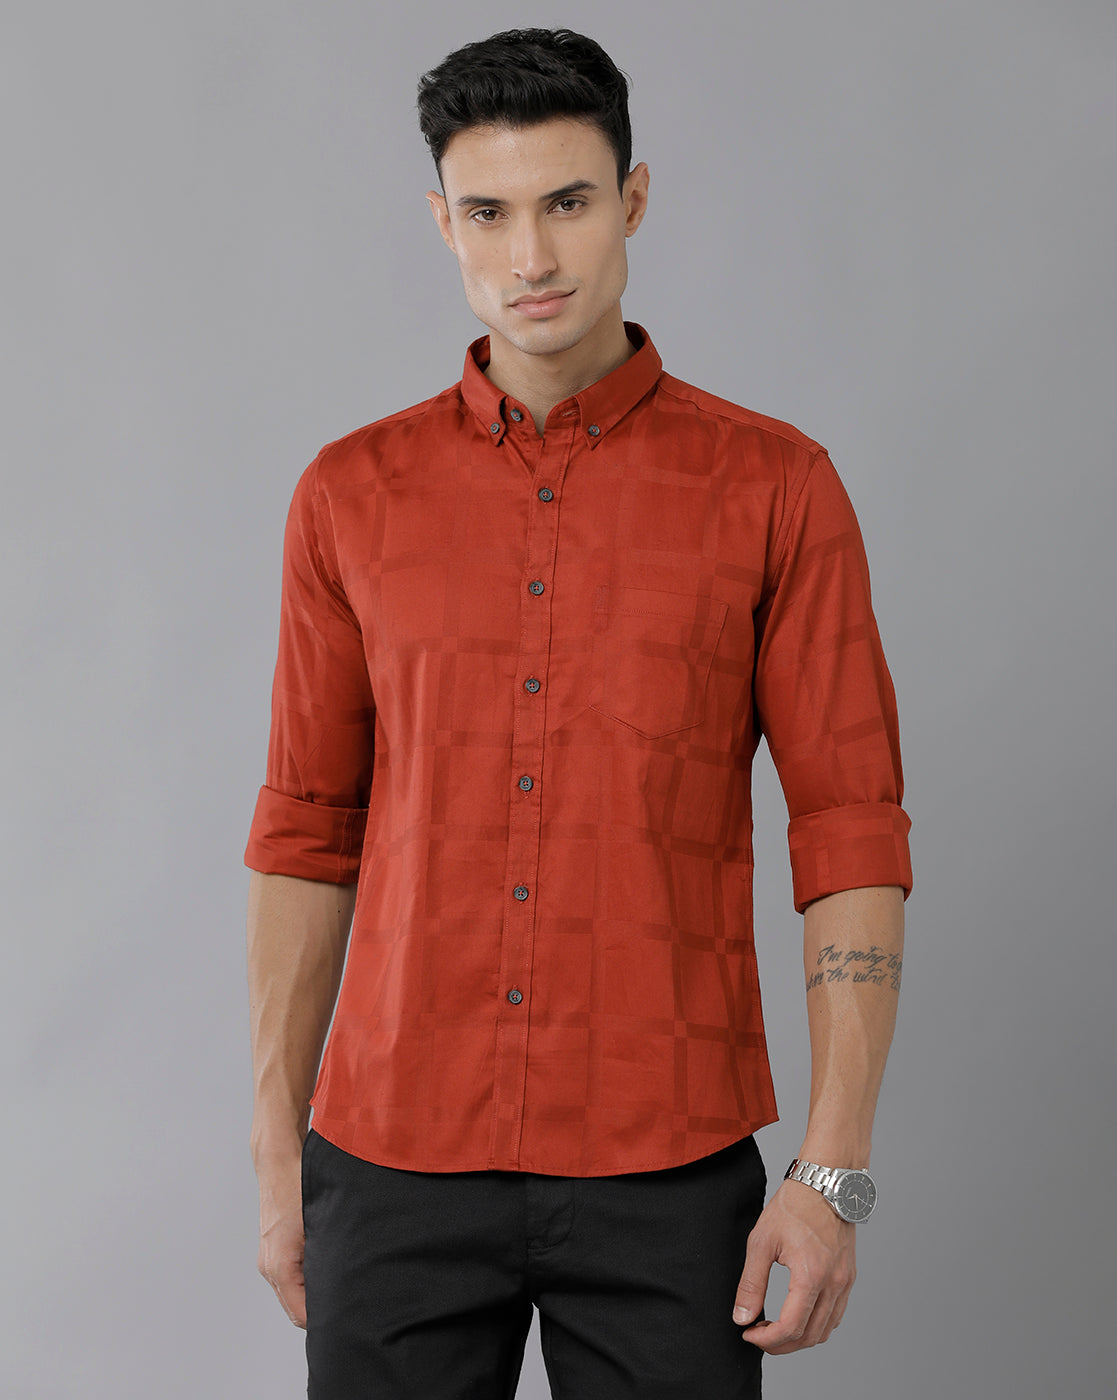 red check shirt mens